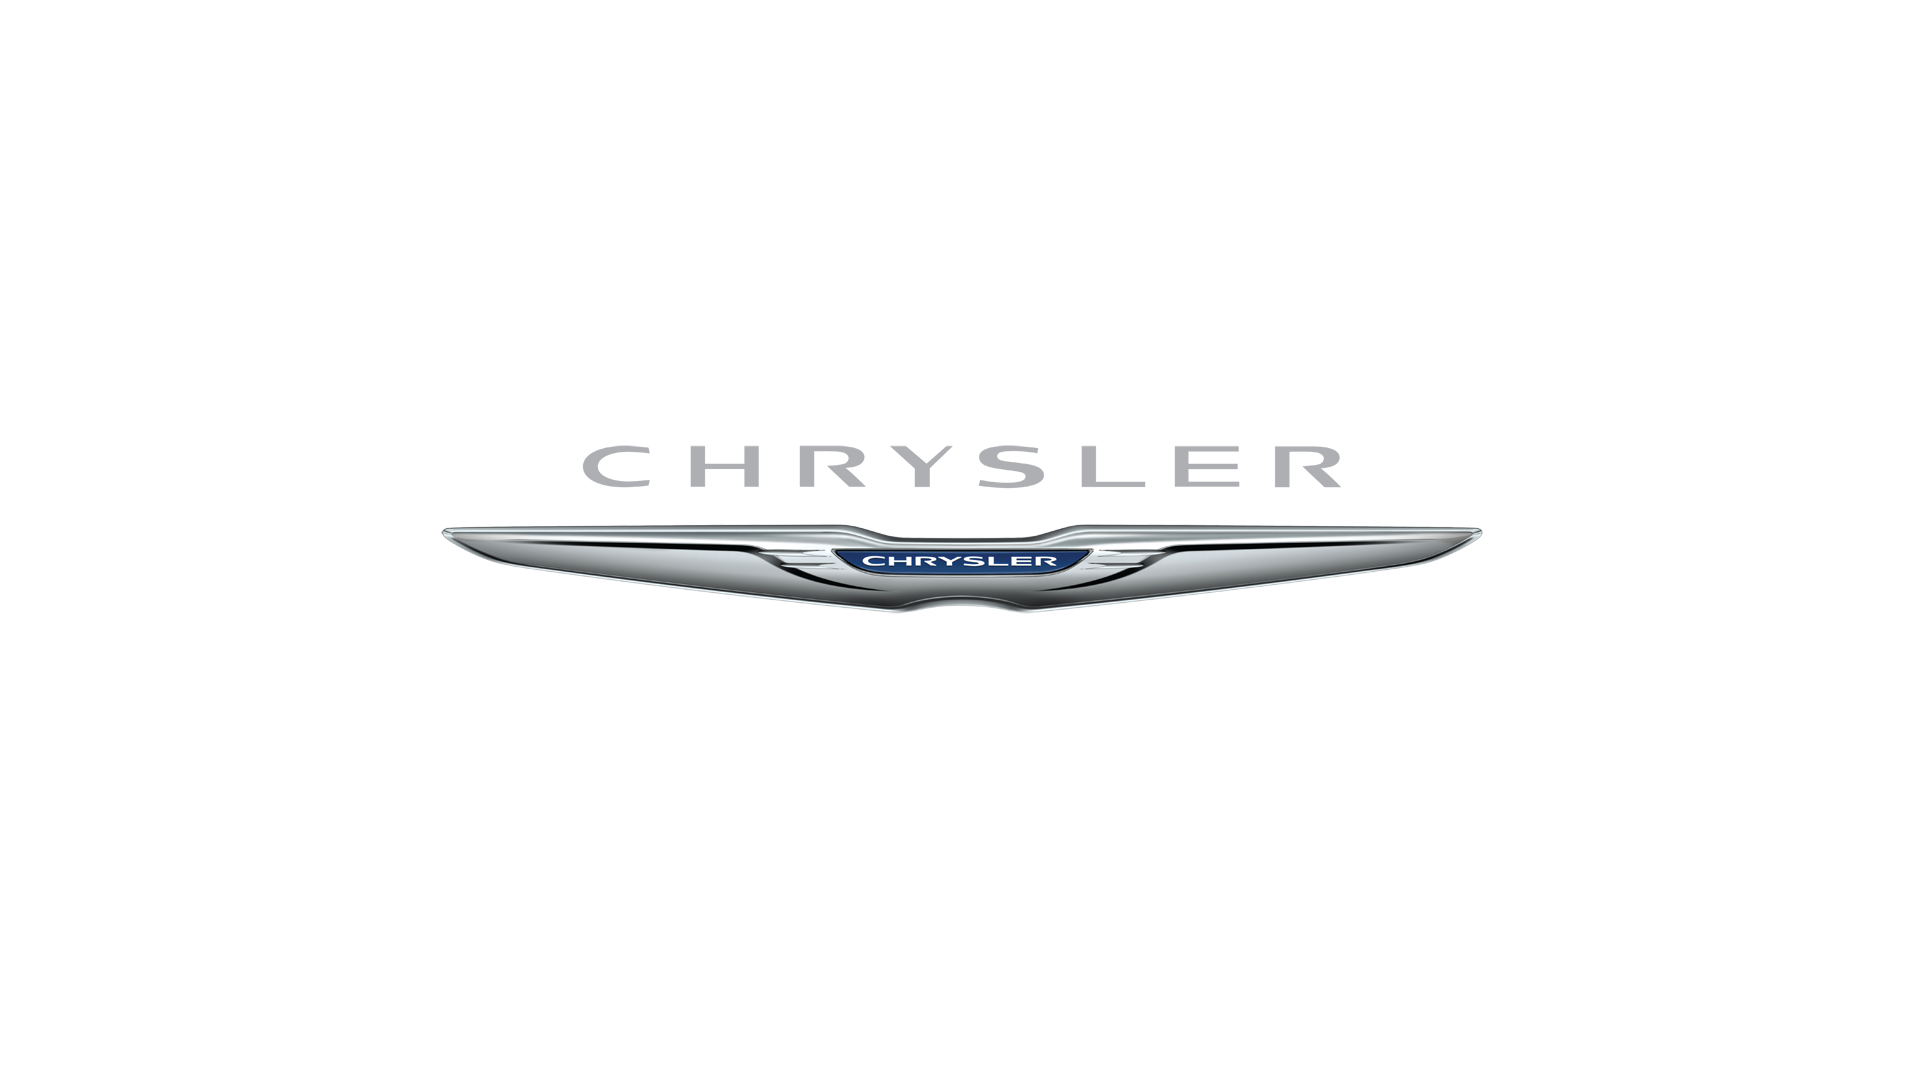 Logotipo da Chrysler